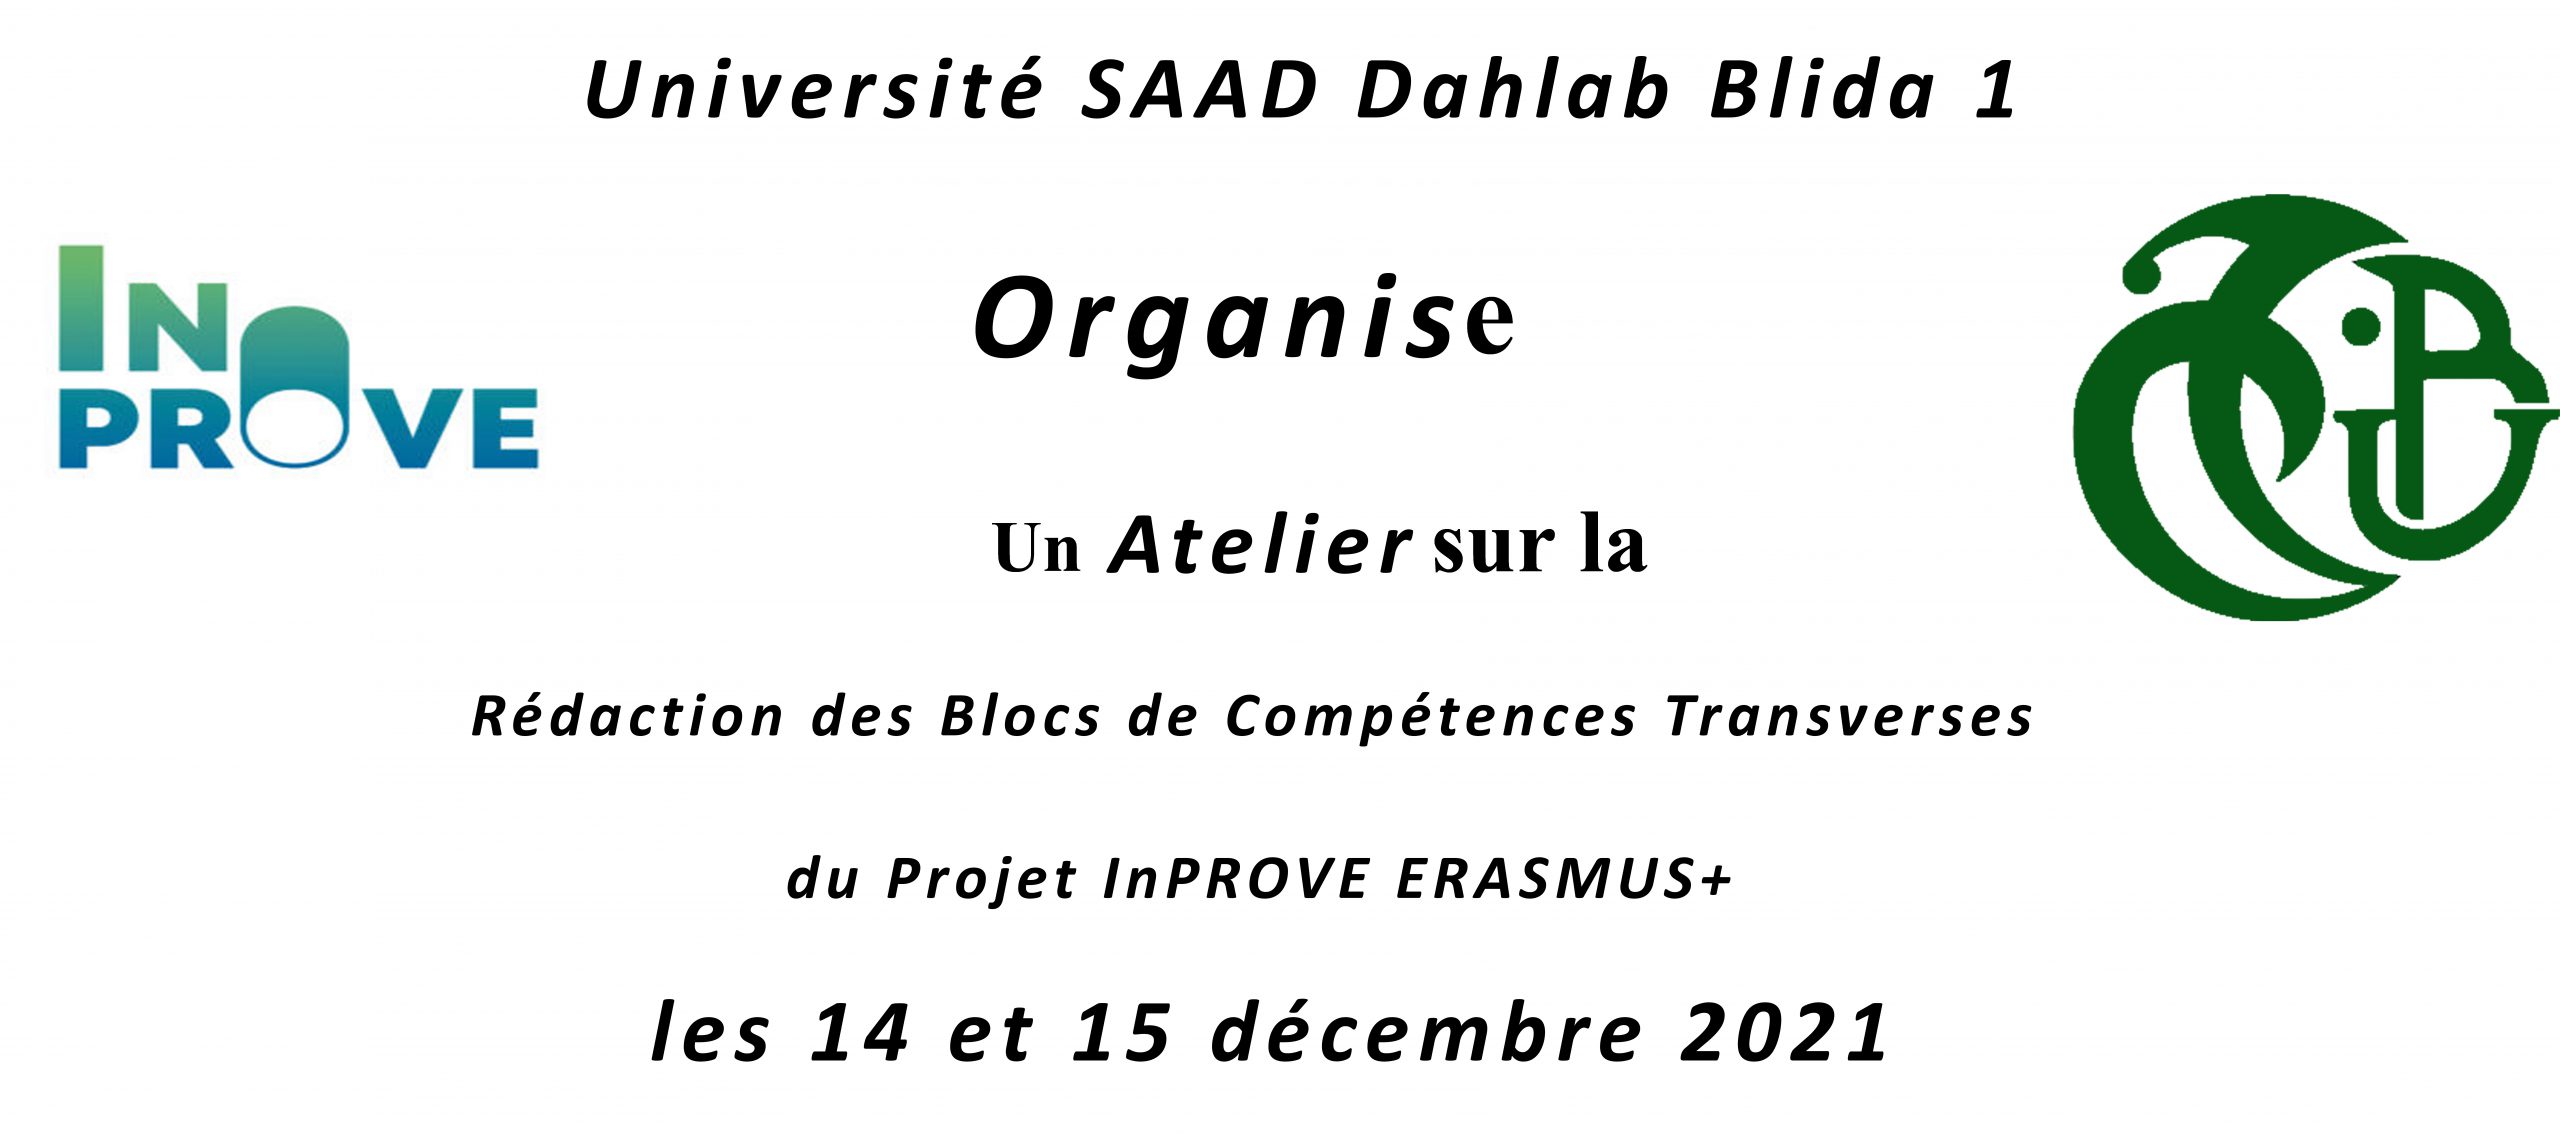 Atelier sur la Rédaction des Blocs de Compétences Transverses du Projet inProve Erasmus+